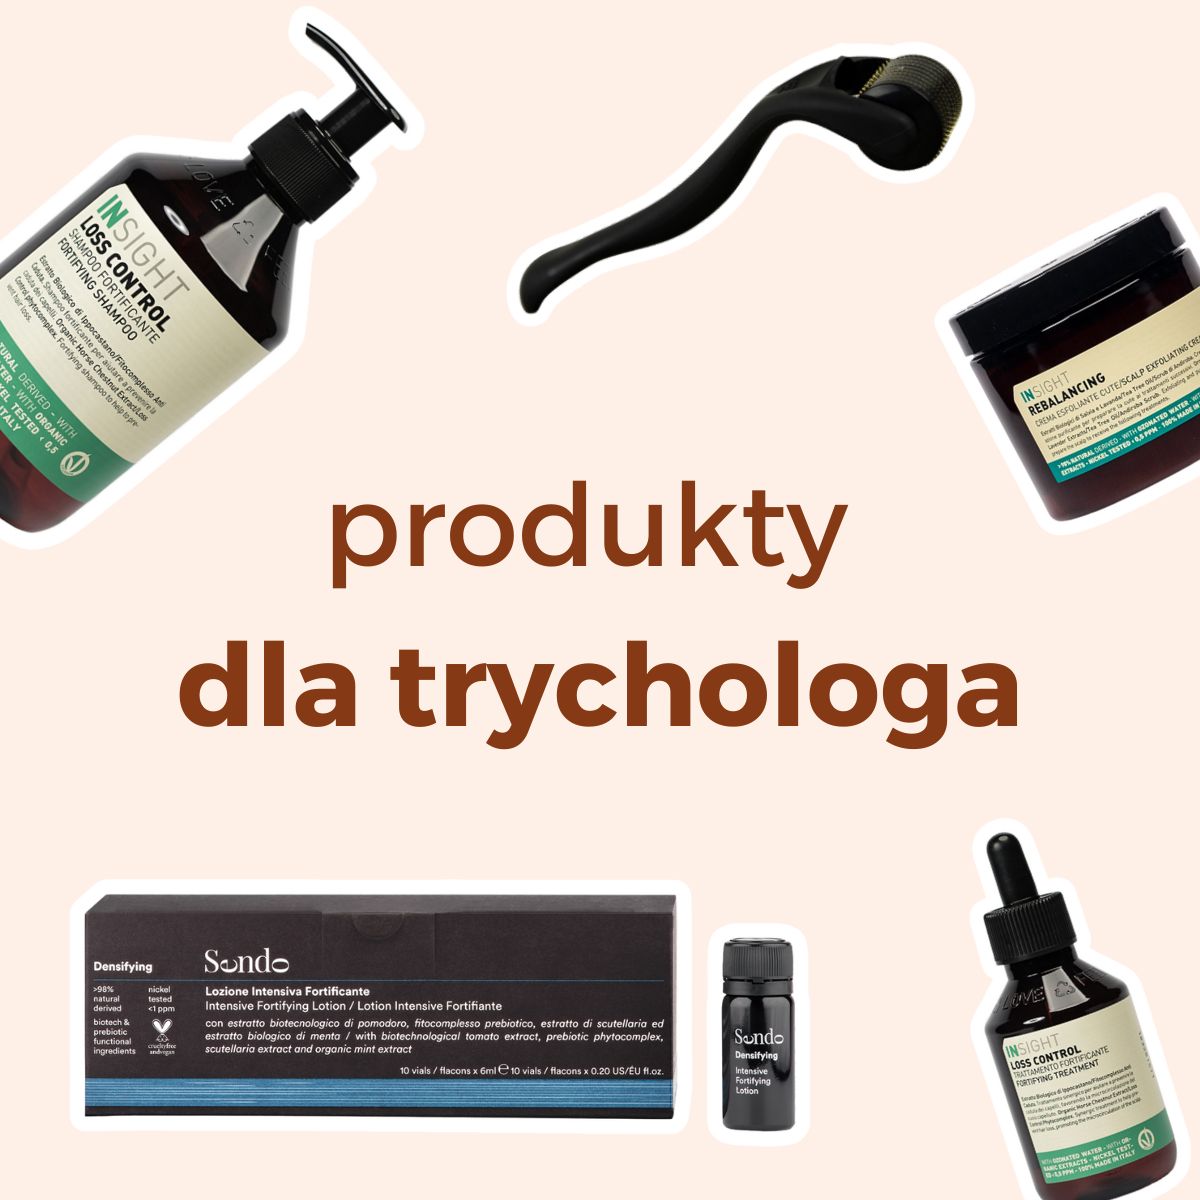 produkty trychologiczne, szampony trychologiczne